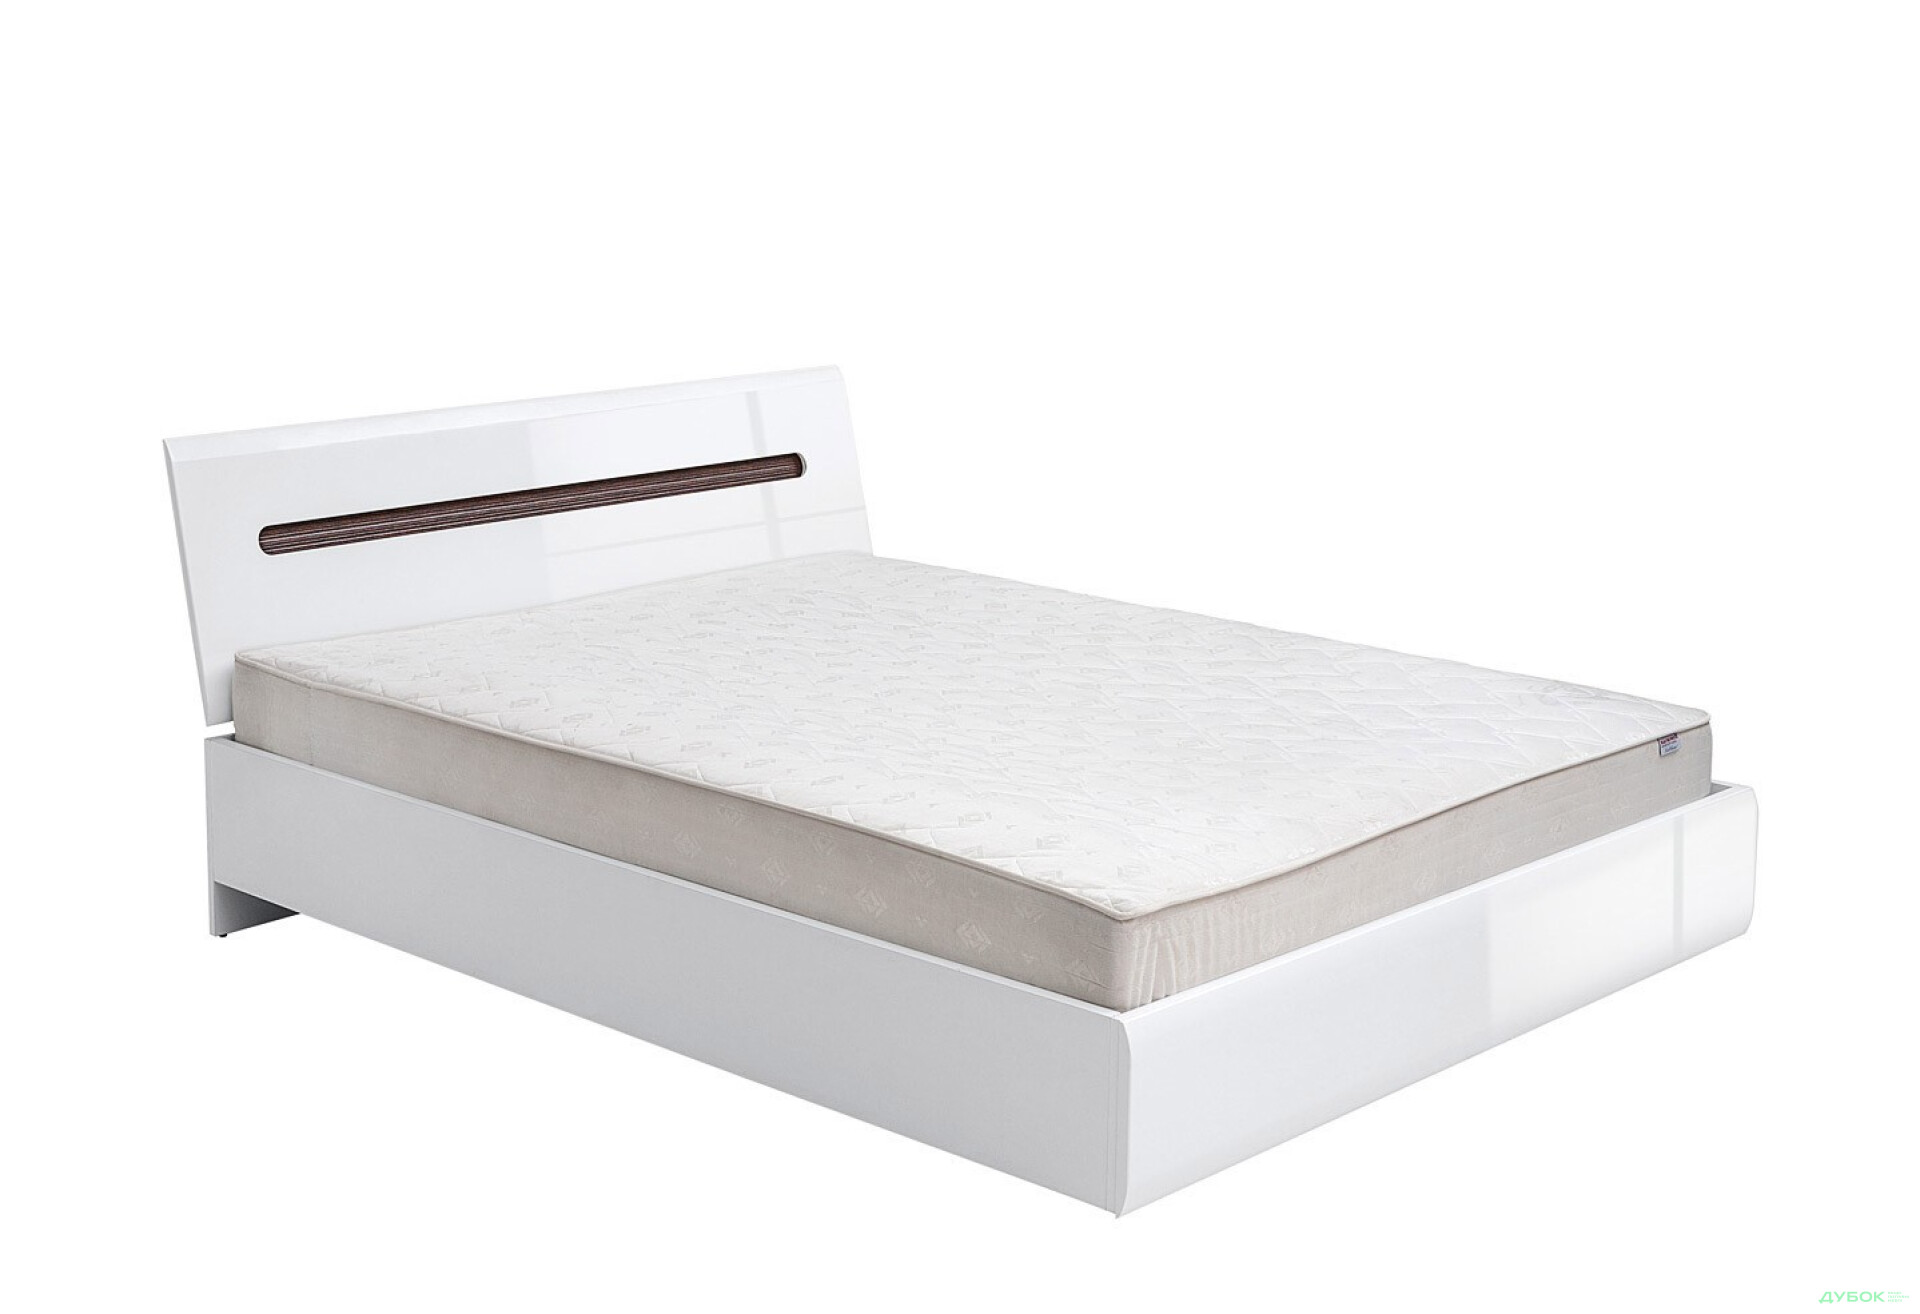 Фото 4 - Ліжко ВМК Ацтека 160х200 см підйомне, біле